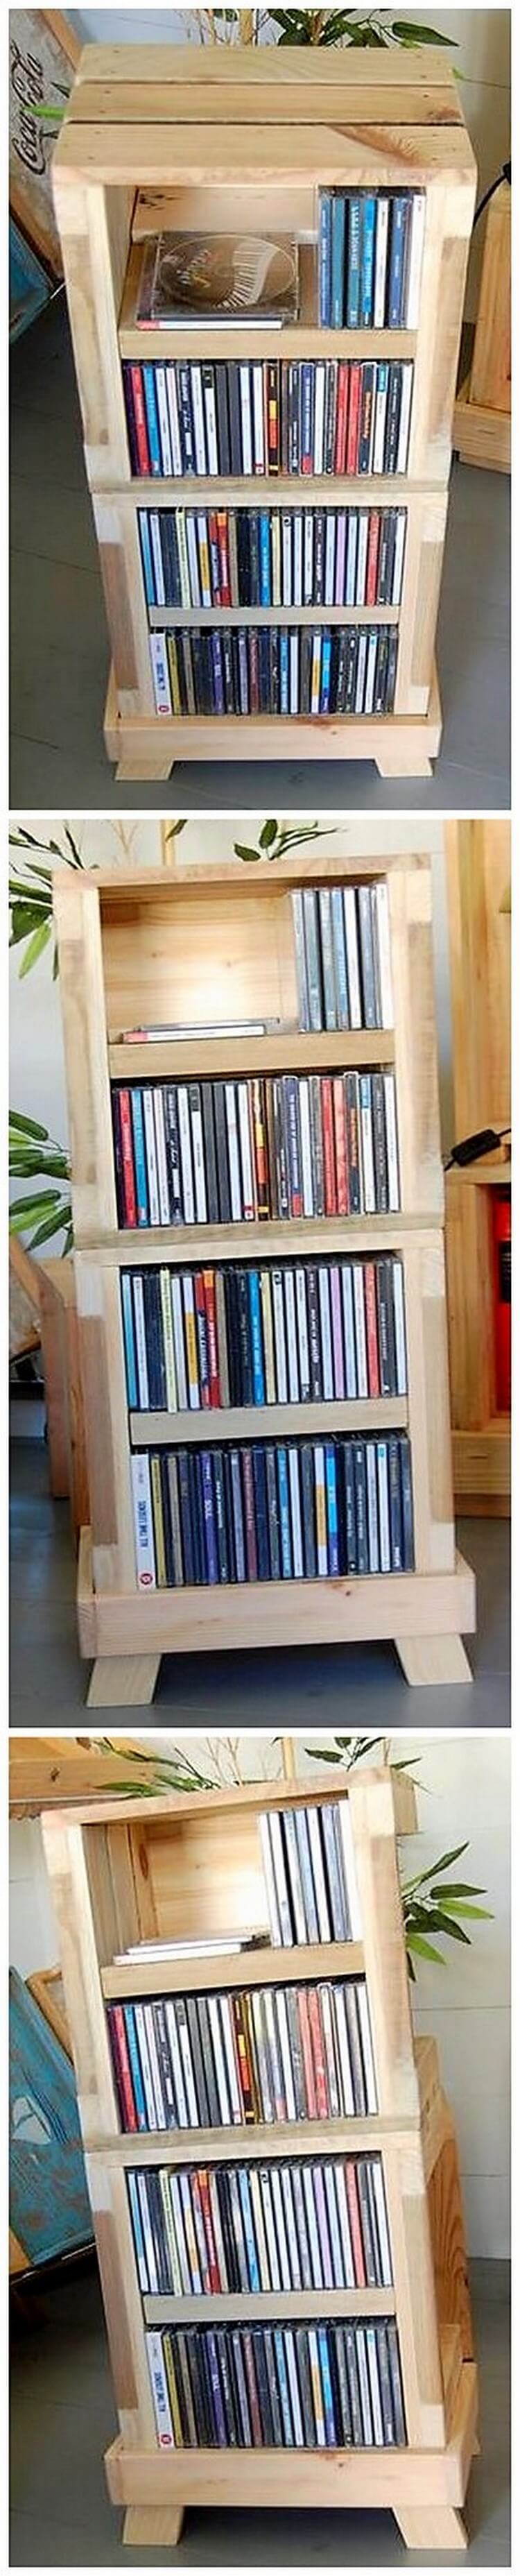 Pallet Bookshelving Cabinet